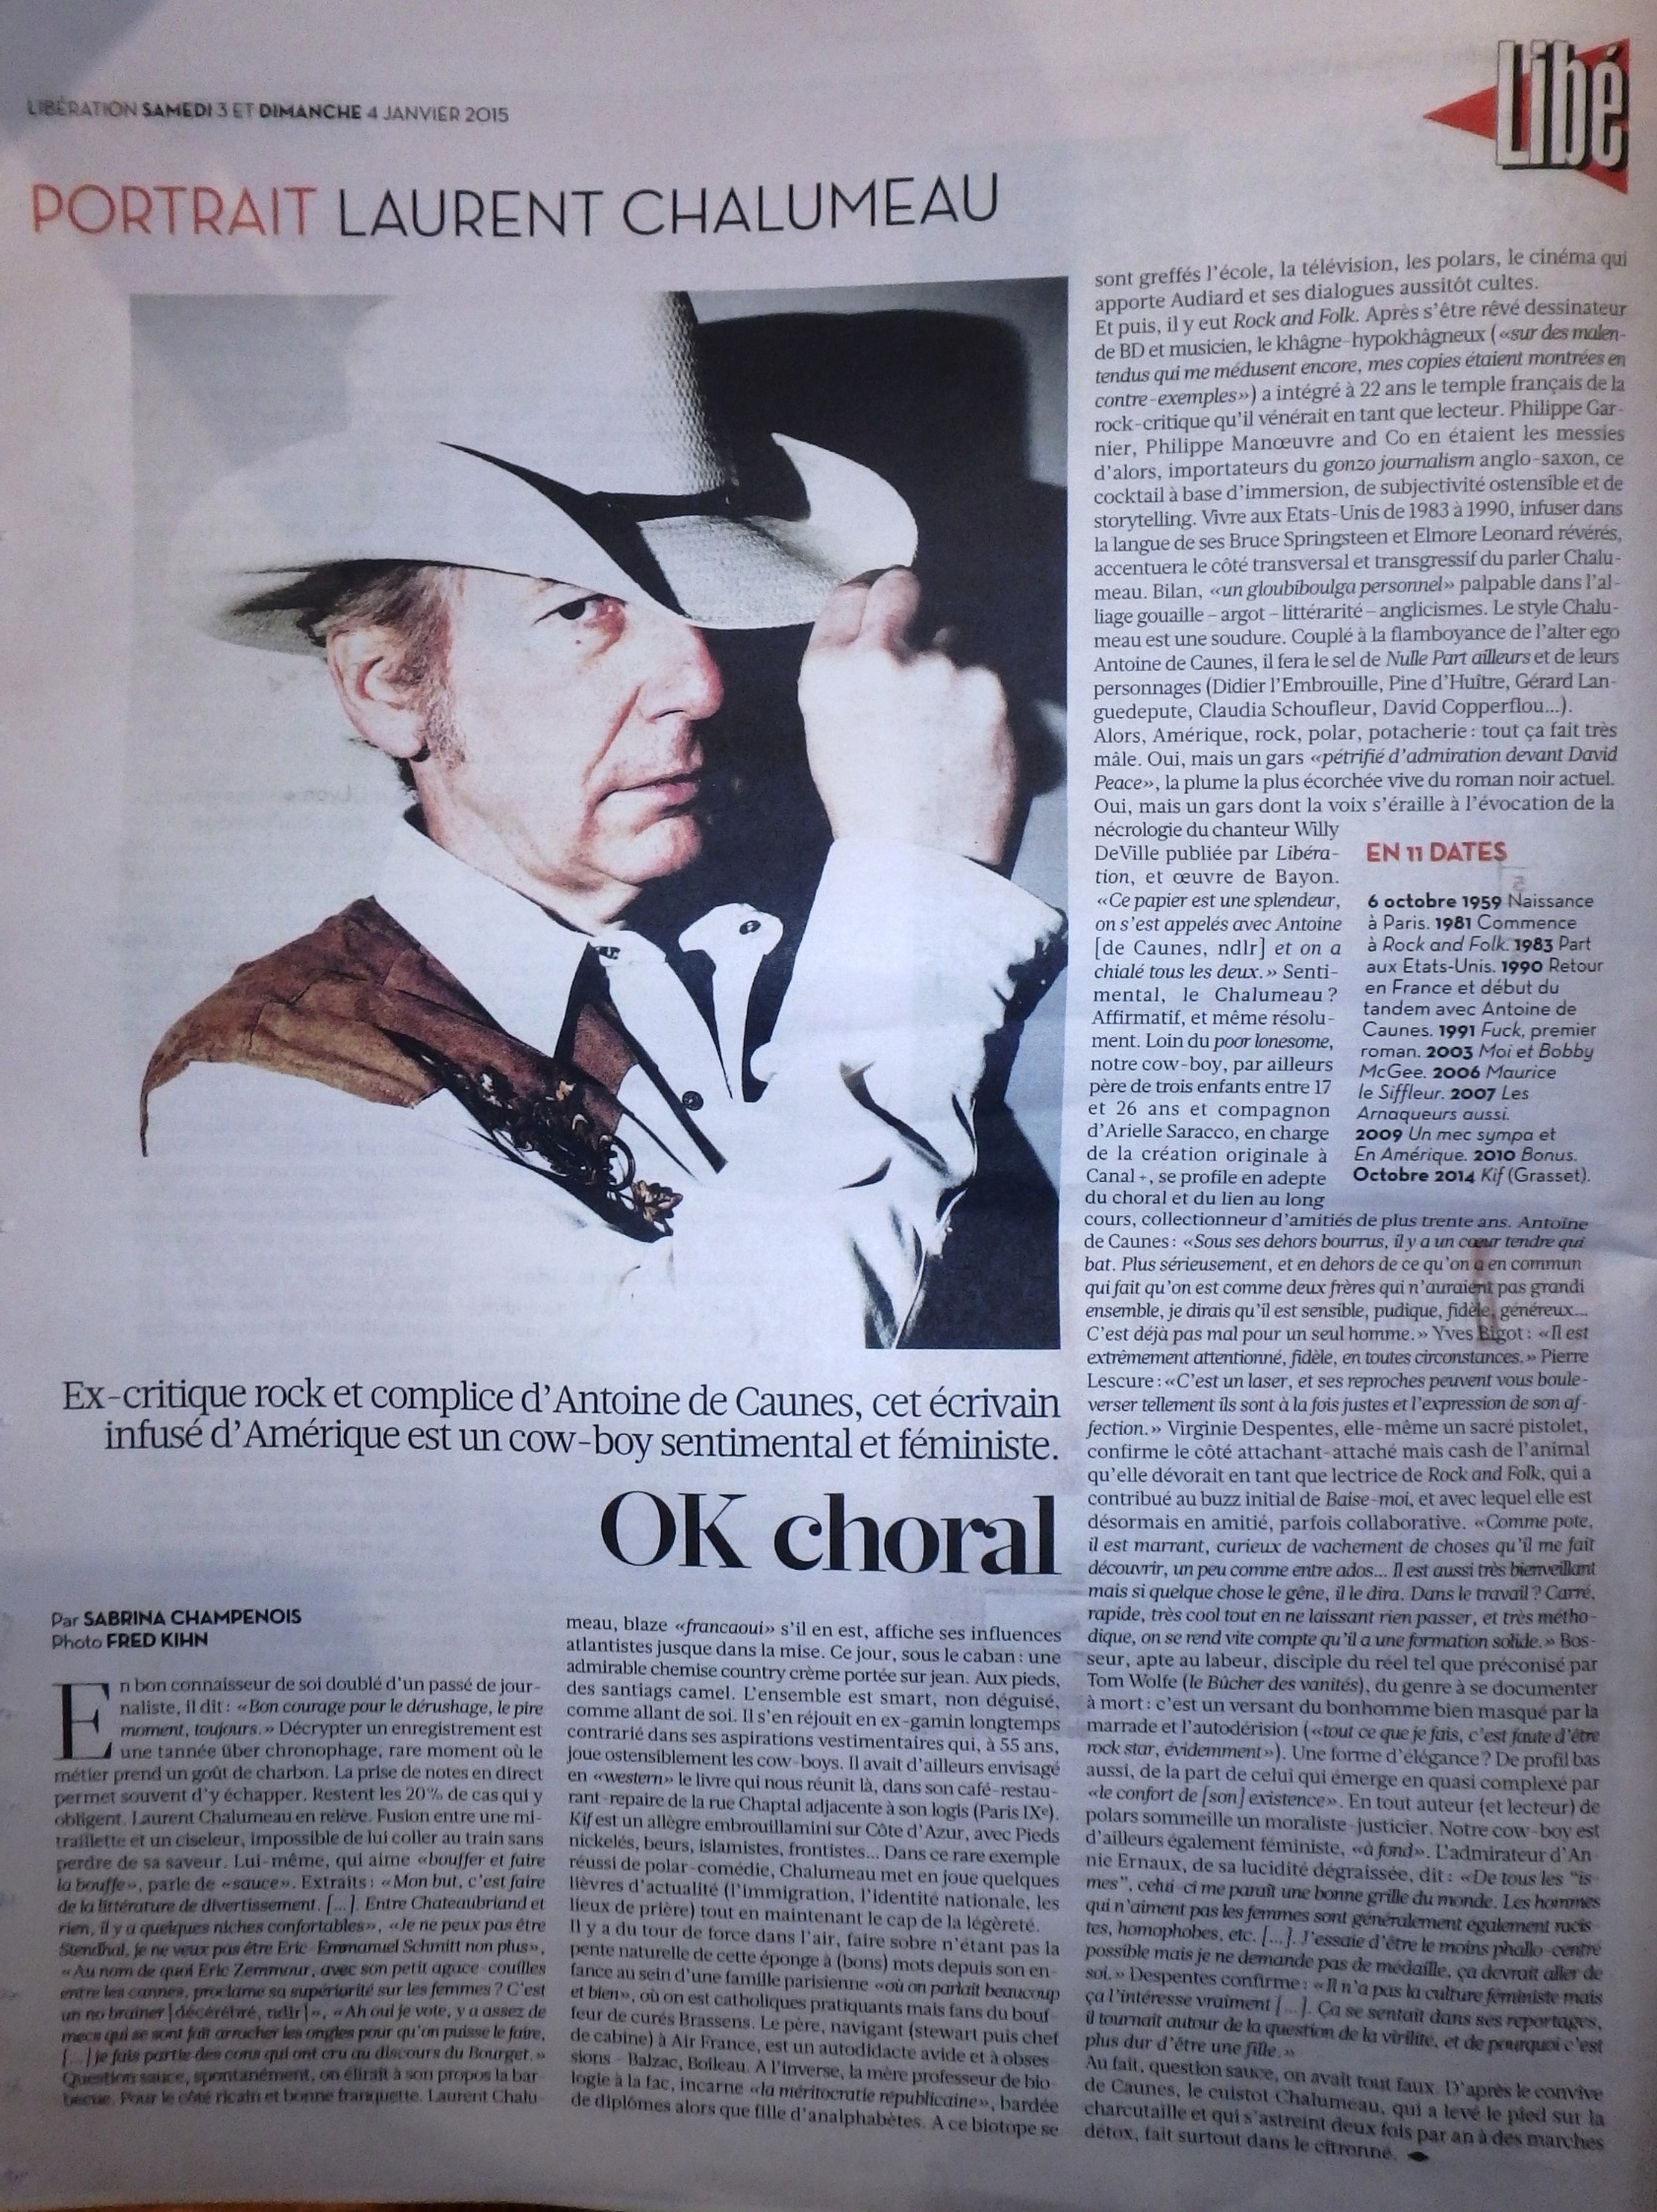 LAURENT CHALUMEAU (roman "KIF", éditions Grasset) : interview "OK Choral" par Sabrina Champenois dans "Libération" (samedi 3 janvier 2015) 15010306074917899512843706